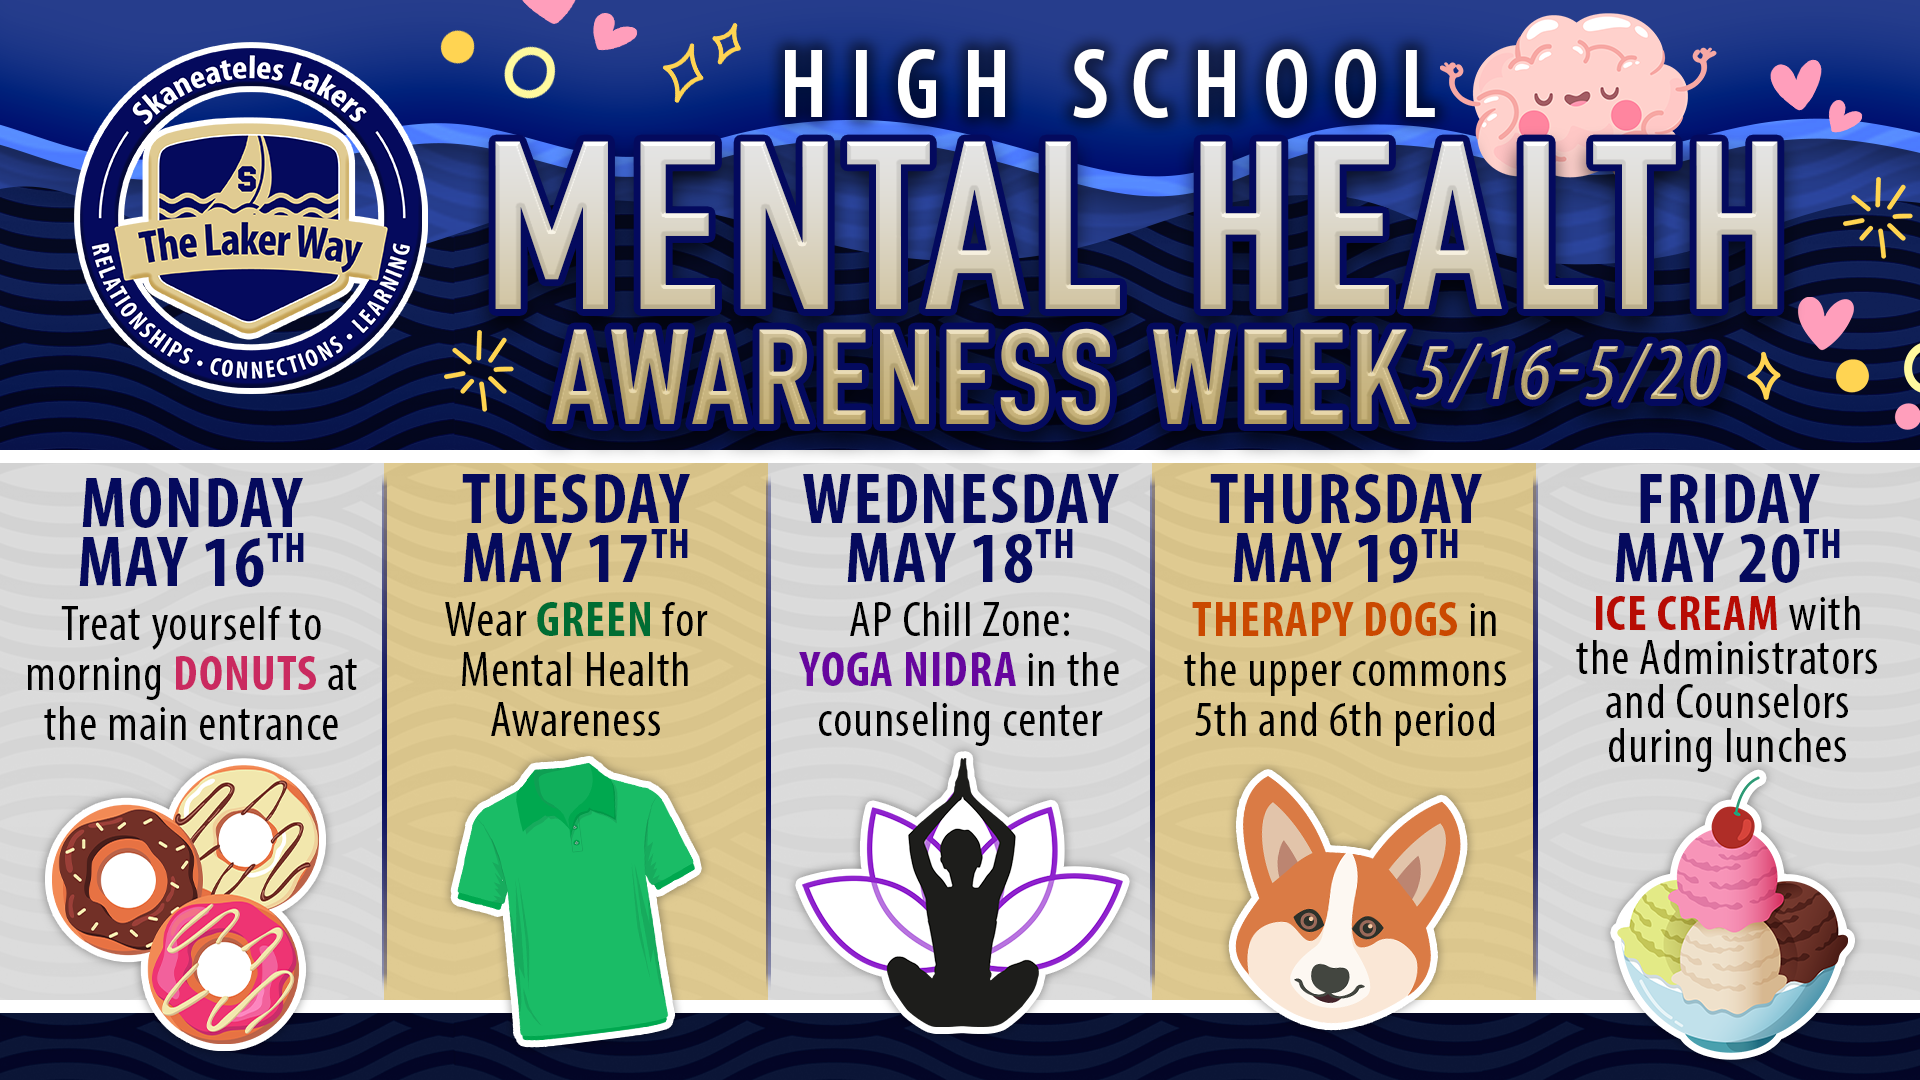 High School Mental Health Awareness Activities, May 16-20